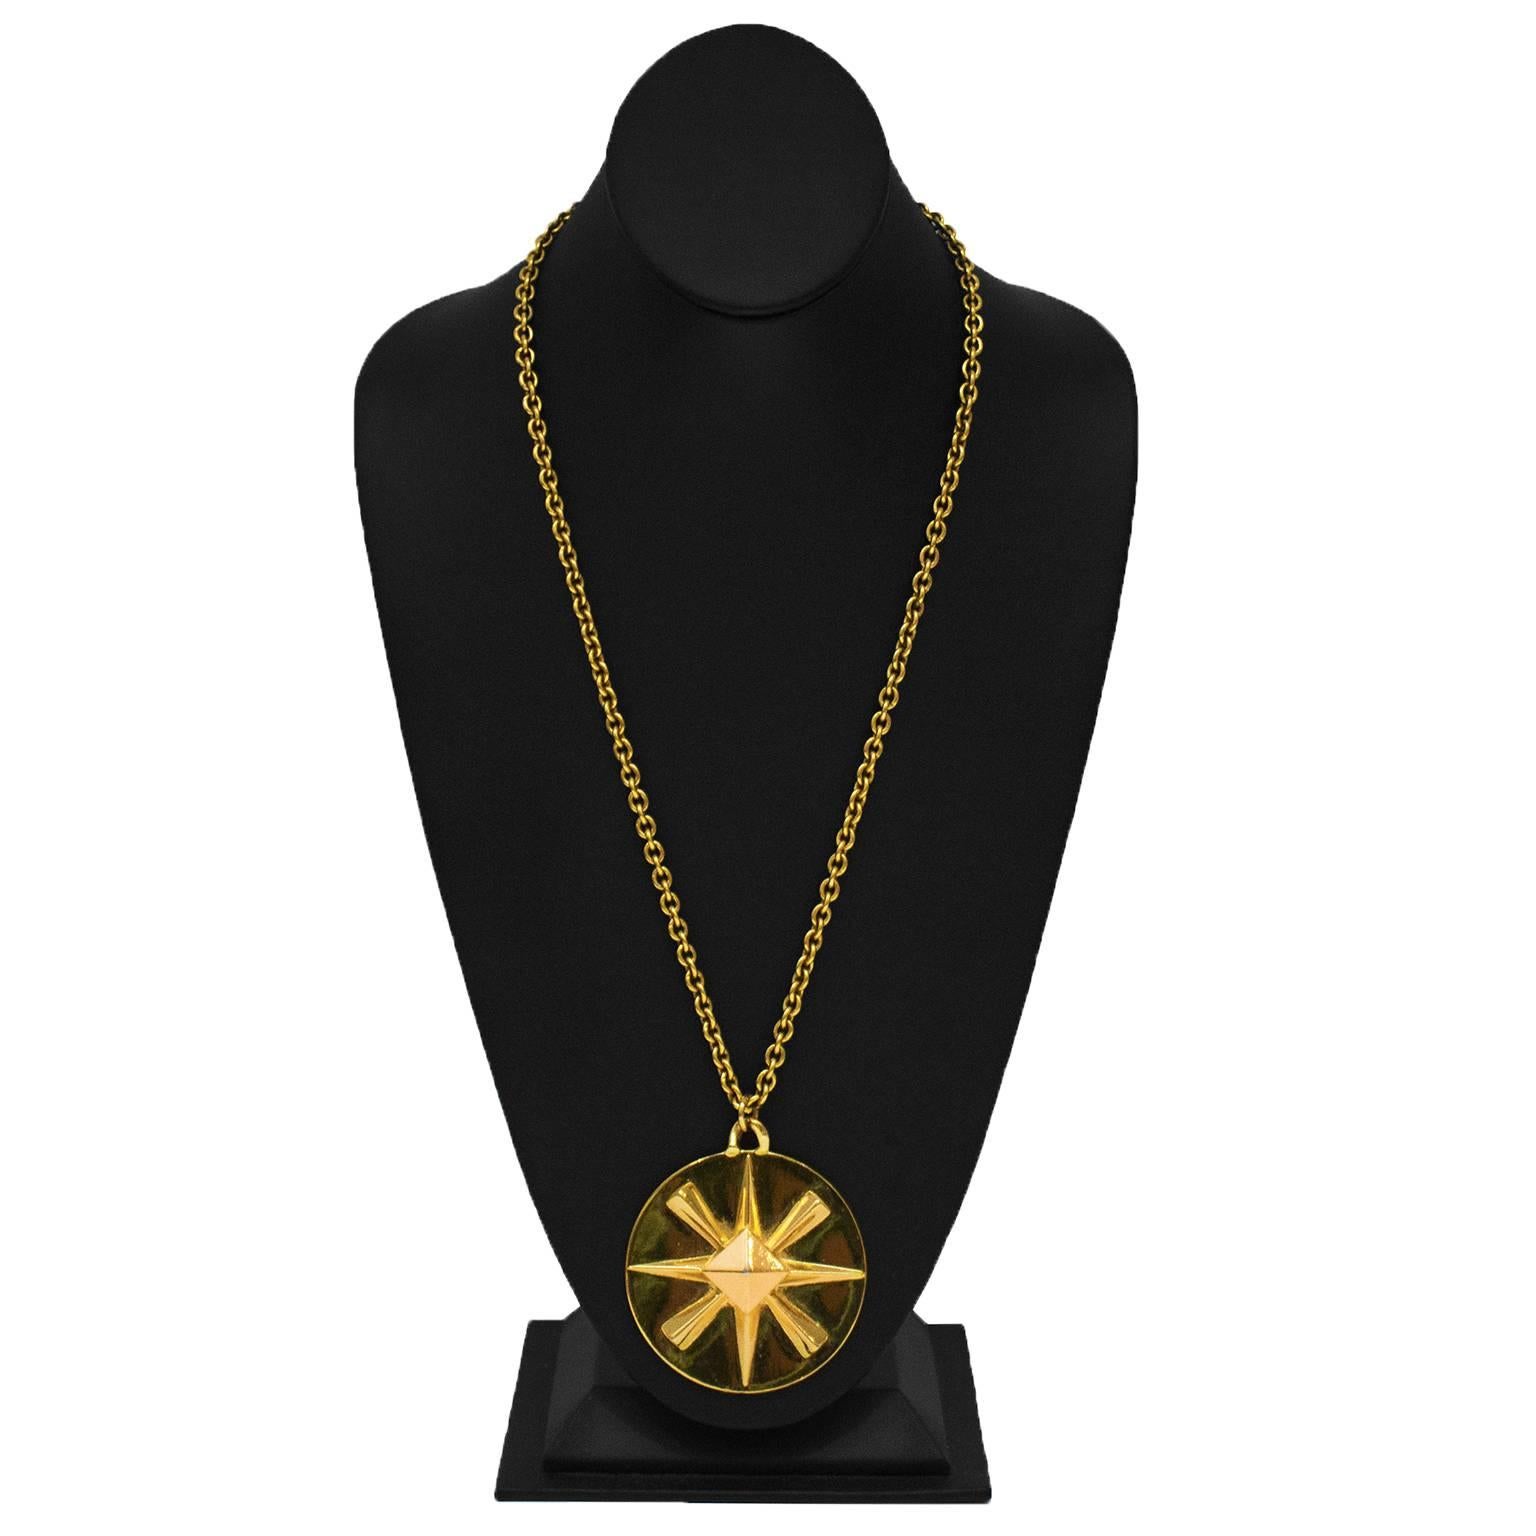 Pendentif surdimensionné en pierre dorée de Chanel sur une longue chaîne en câble d'or. Le pendentif rond est orné d'un logo CC d'un côté et d'une étoile de l'autre. Il se ferme par un fermoir à ressort circulaire. Etiquette ovale de Chanel sur la